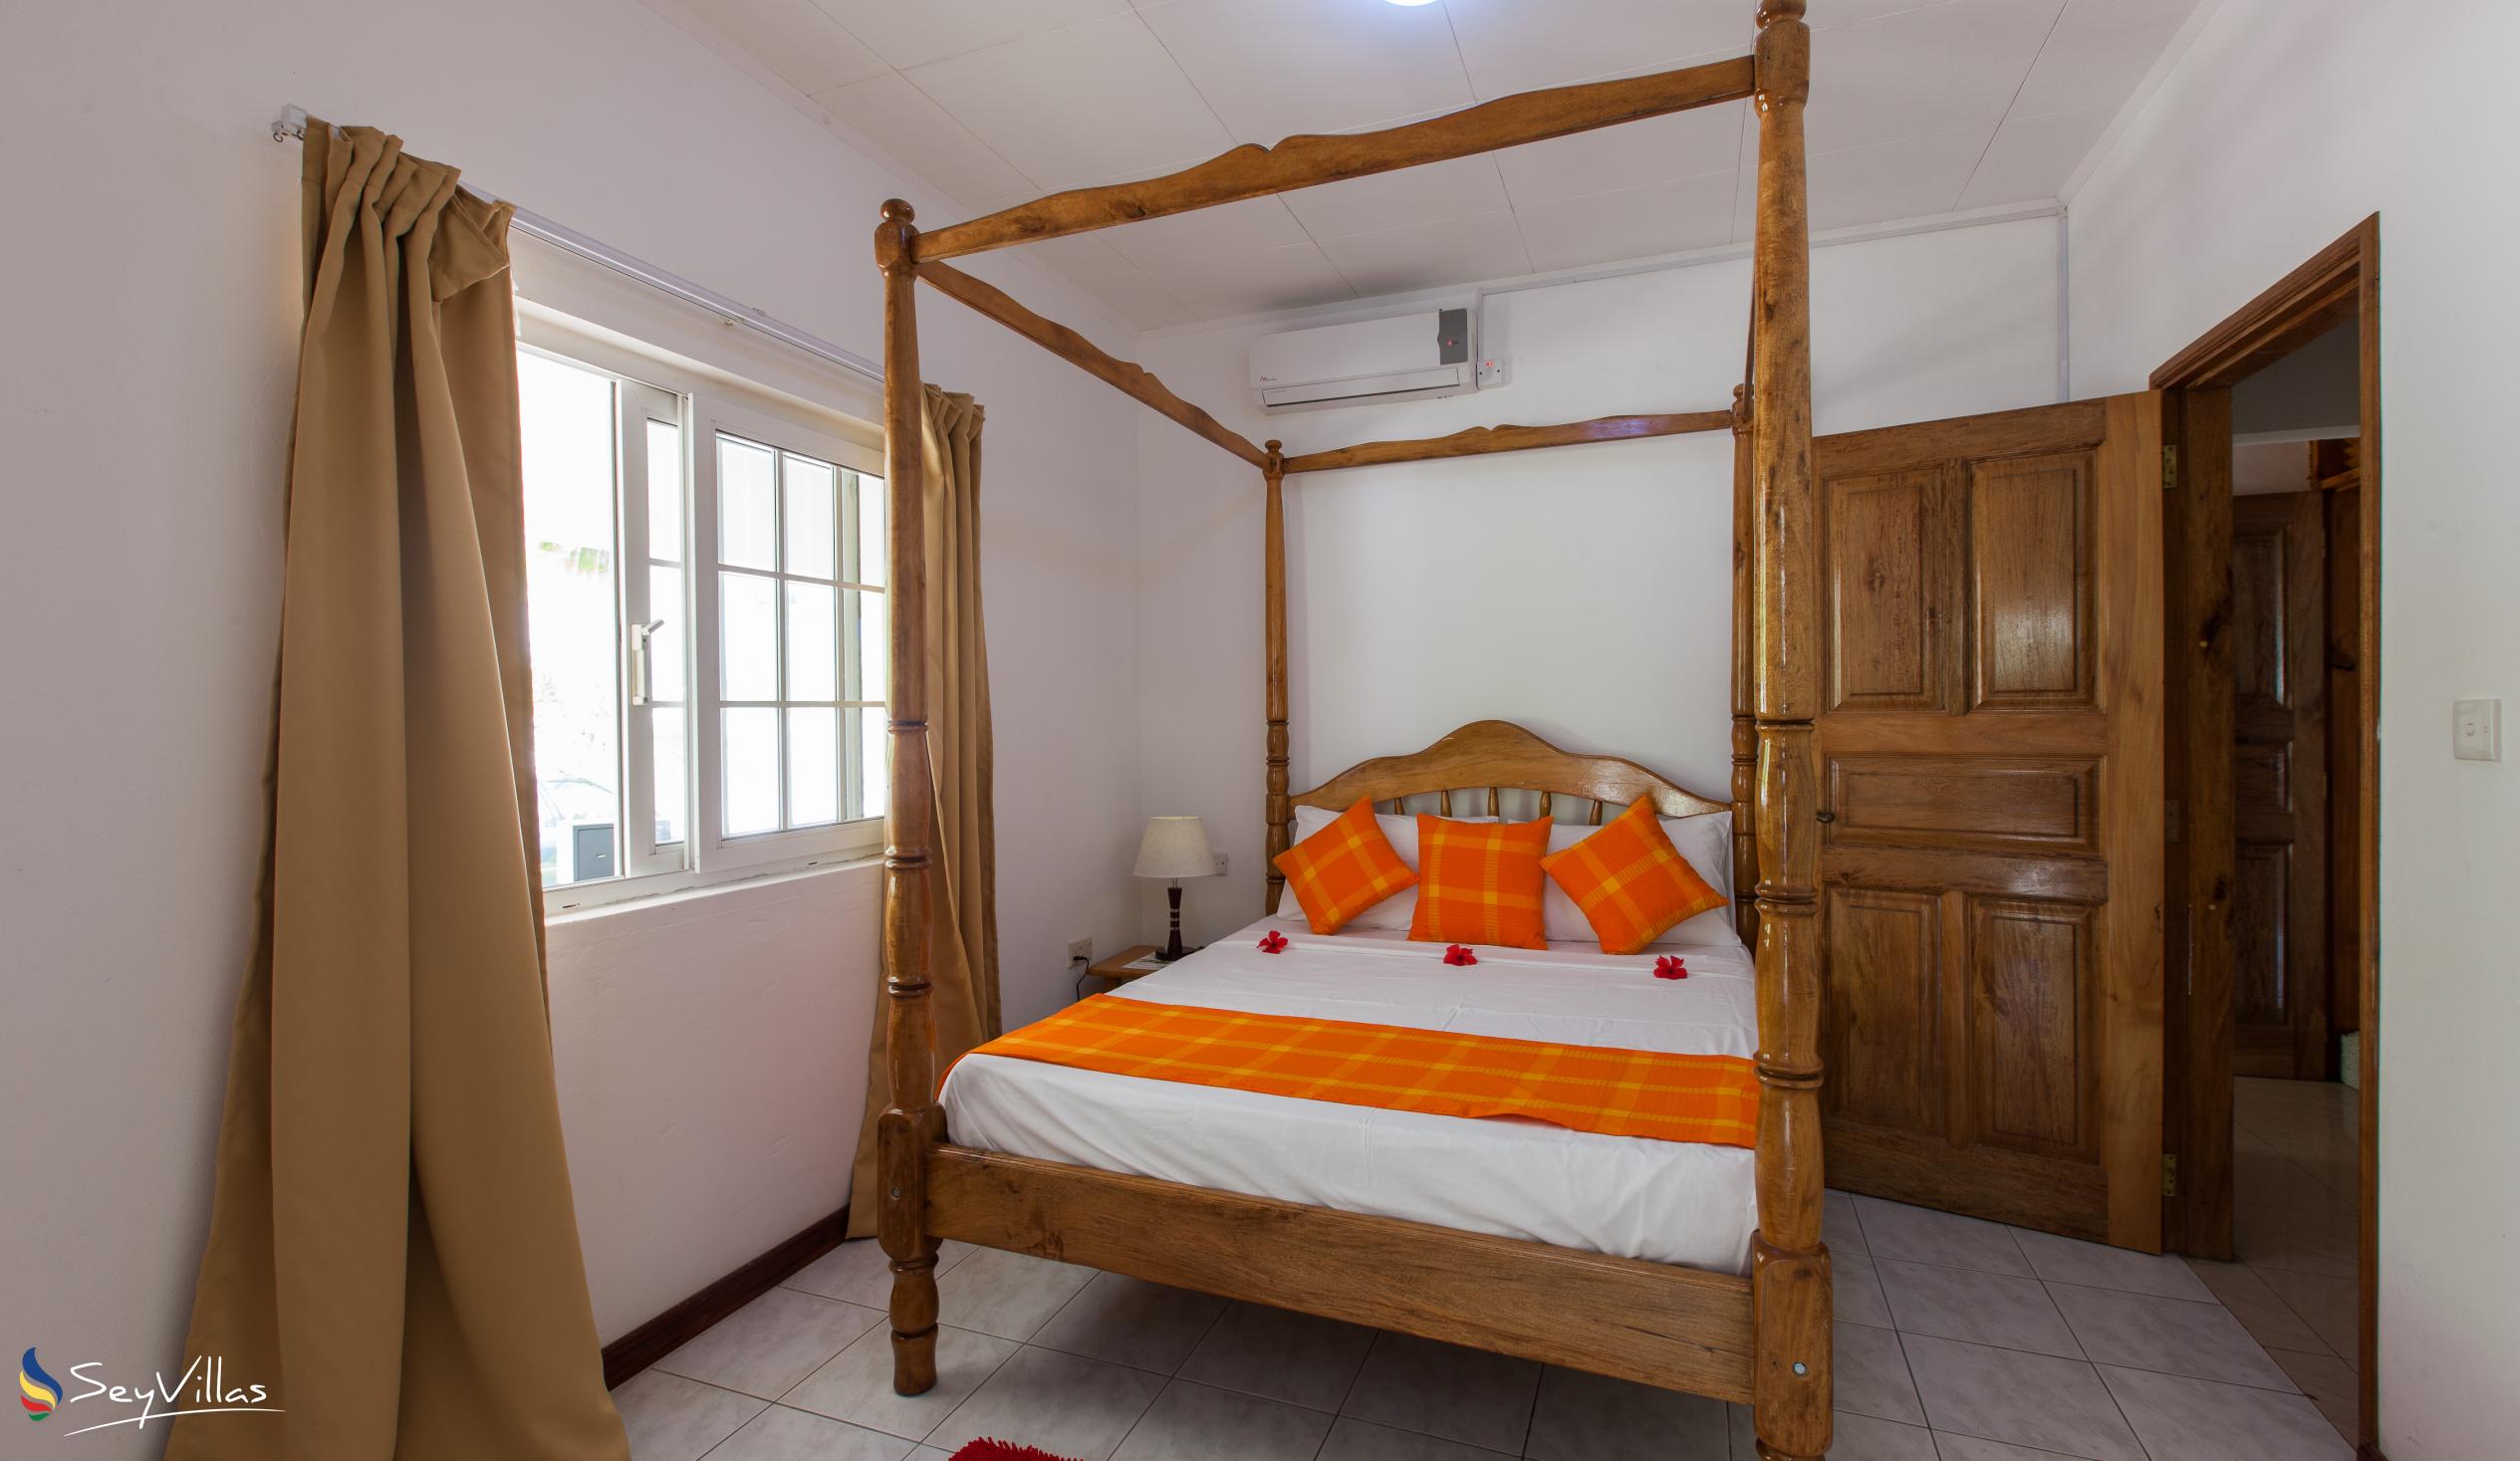 Foto 41: Villa Confort - Chambre familiale 1 - Praslin (Seychelles)